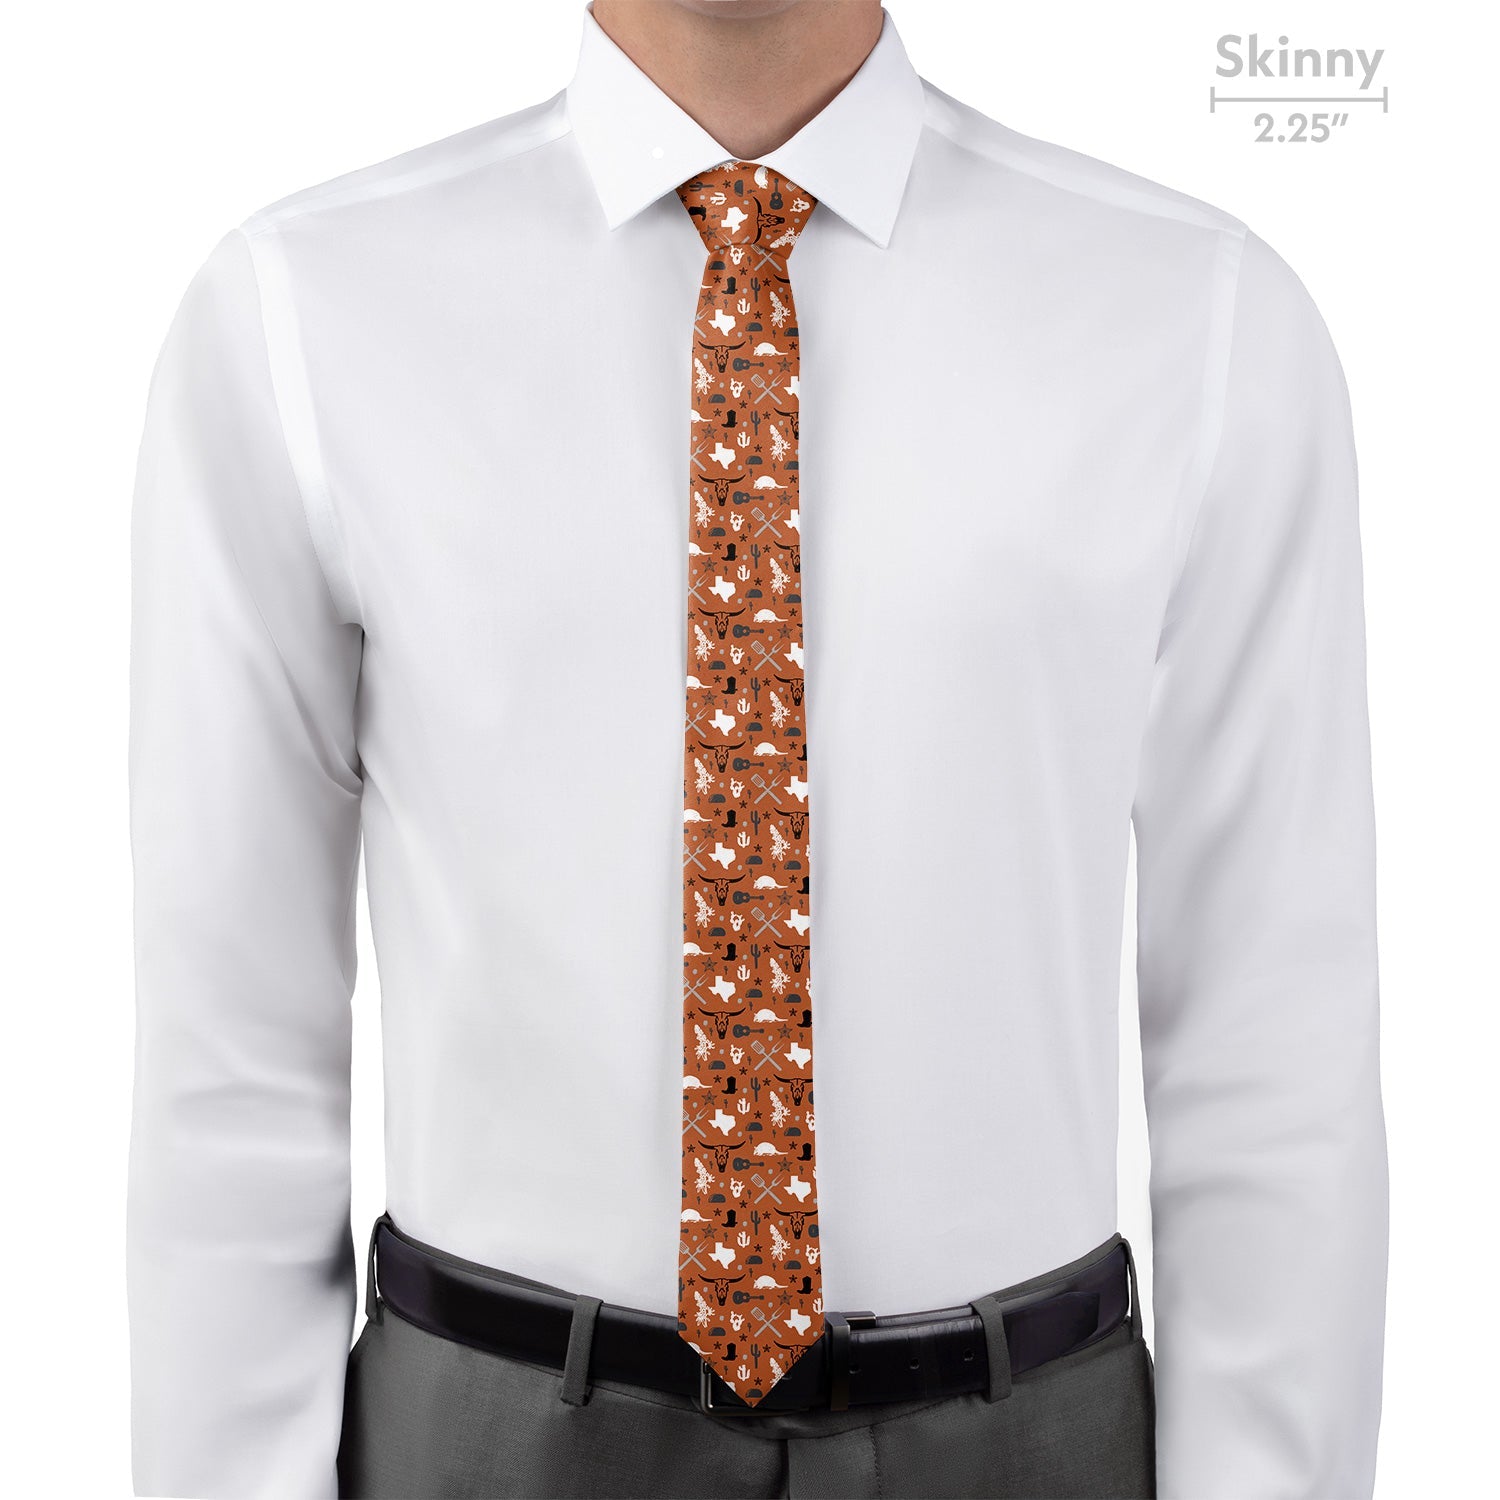 Texas State Heritage Necktie - Skinny 2.25" -  - Knotty Tie Co.